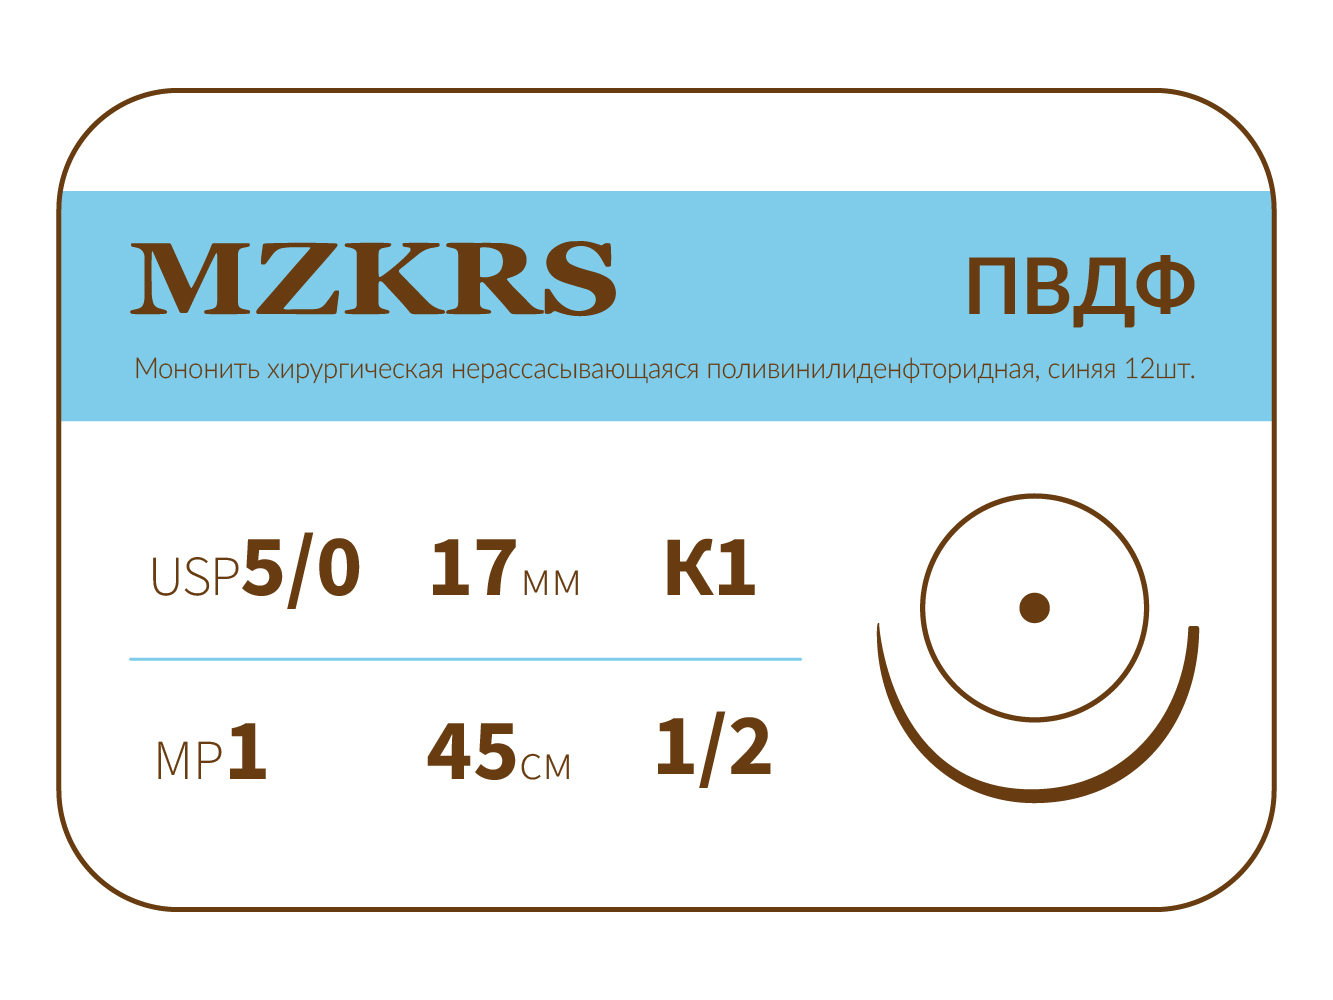 1712К1-Premium-5/0 (1)45  ПВДФ хирургическая нить поливинилиденфторидная, MZKRS (Россия)